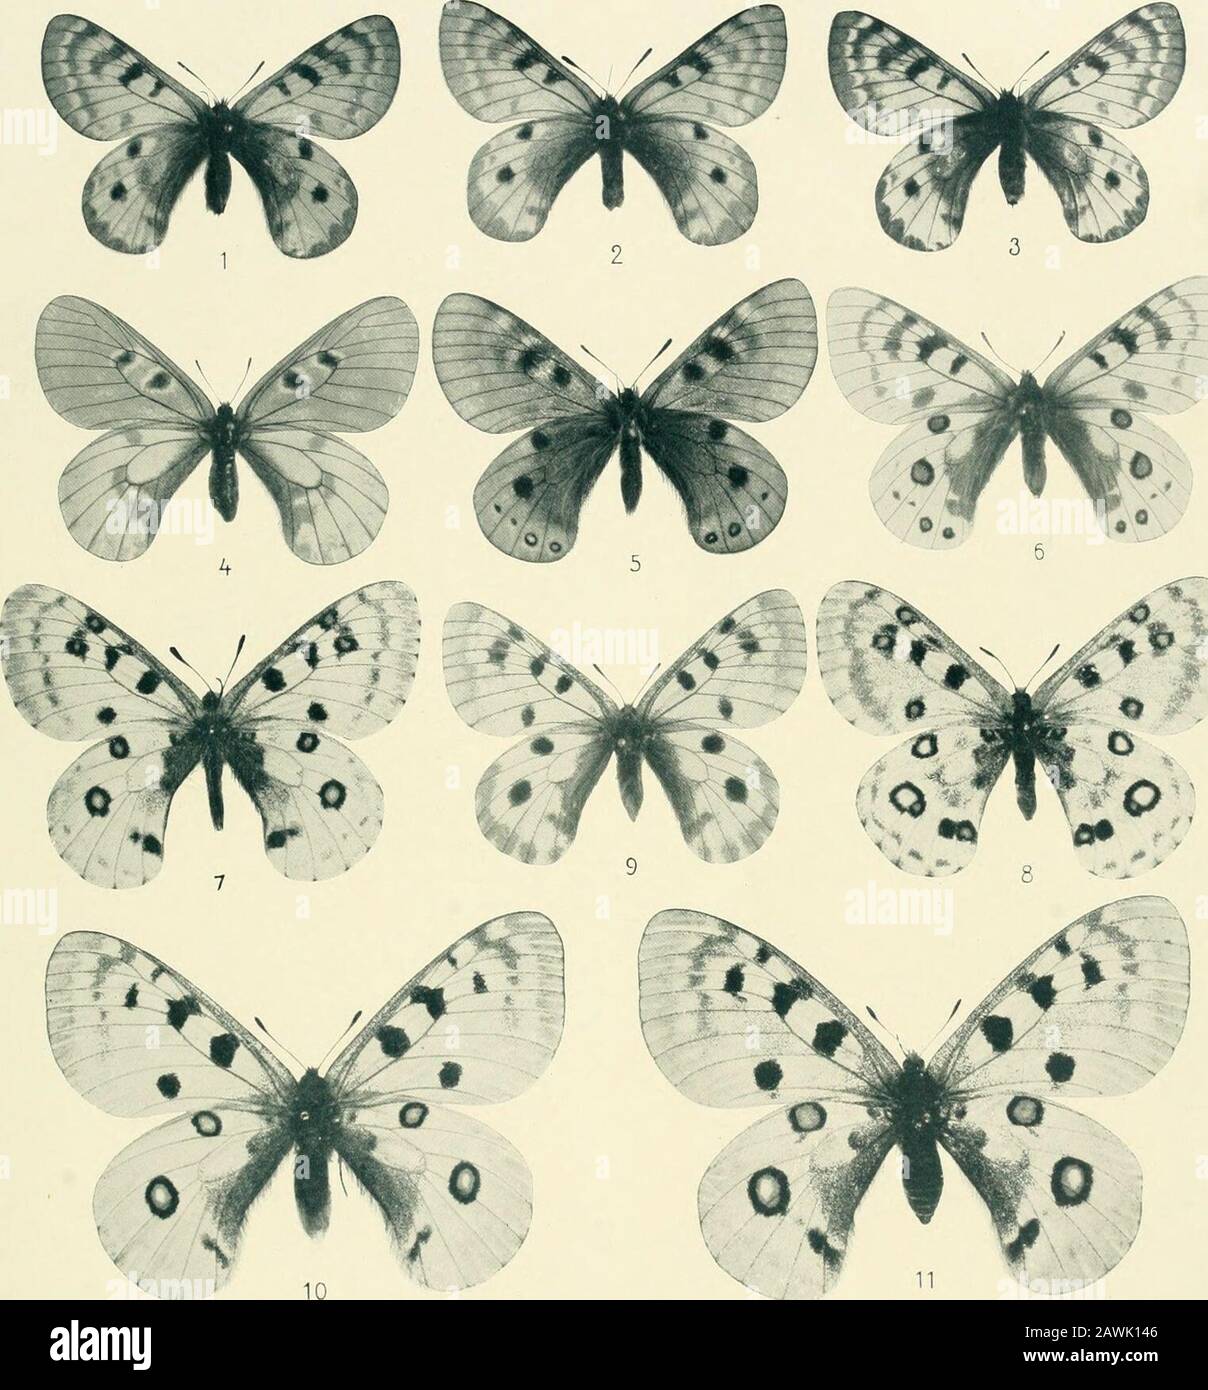 Lepidoptera Niepeltiana : Abbildungen und Beschreibungen neuer und wenig bekannter Lepidoptera . :) Papilio (Ornithoptera) supremus f. samson Niep. 9 (Type!) -- 2) Papilio (Ornithoptera) supremus f. titan Gr. Smith. S TAFEL VII. iT^. 1, 2) Pamassius patricius Niep. 9 9 (Typen!) --3) Parti, patricius ? Unterseite -- 4) Parti, mnemosyne silesiacusFrühst. S — 5) Parn. delphius ab. nox Niep. o (Type!) — 6) Parti, delphius itnmarginata Niep. d (Type!) — 7, 8) Parti.Davidis alburnus Stichel d 9 (Typen!) -- 9) Parn. actius Ev. ab. mirandus Niep. 9 (Type!) - • 10, 11) Parti, apollo friburgensis Niep. Stock Photo